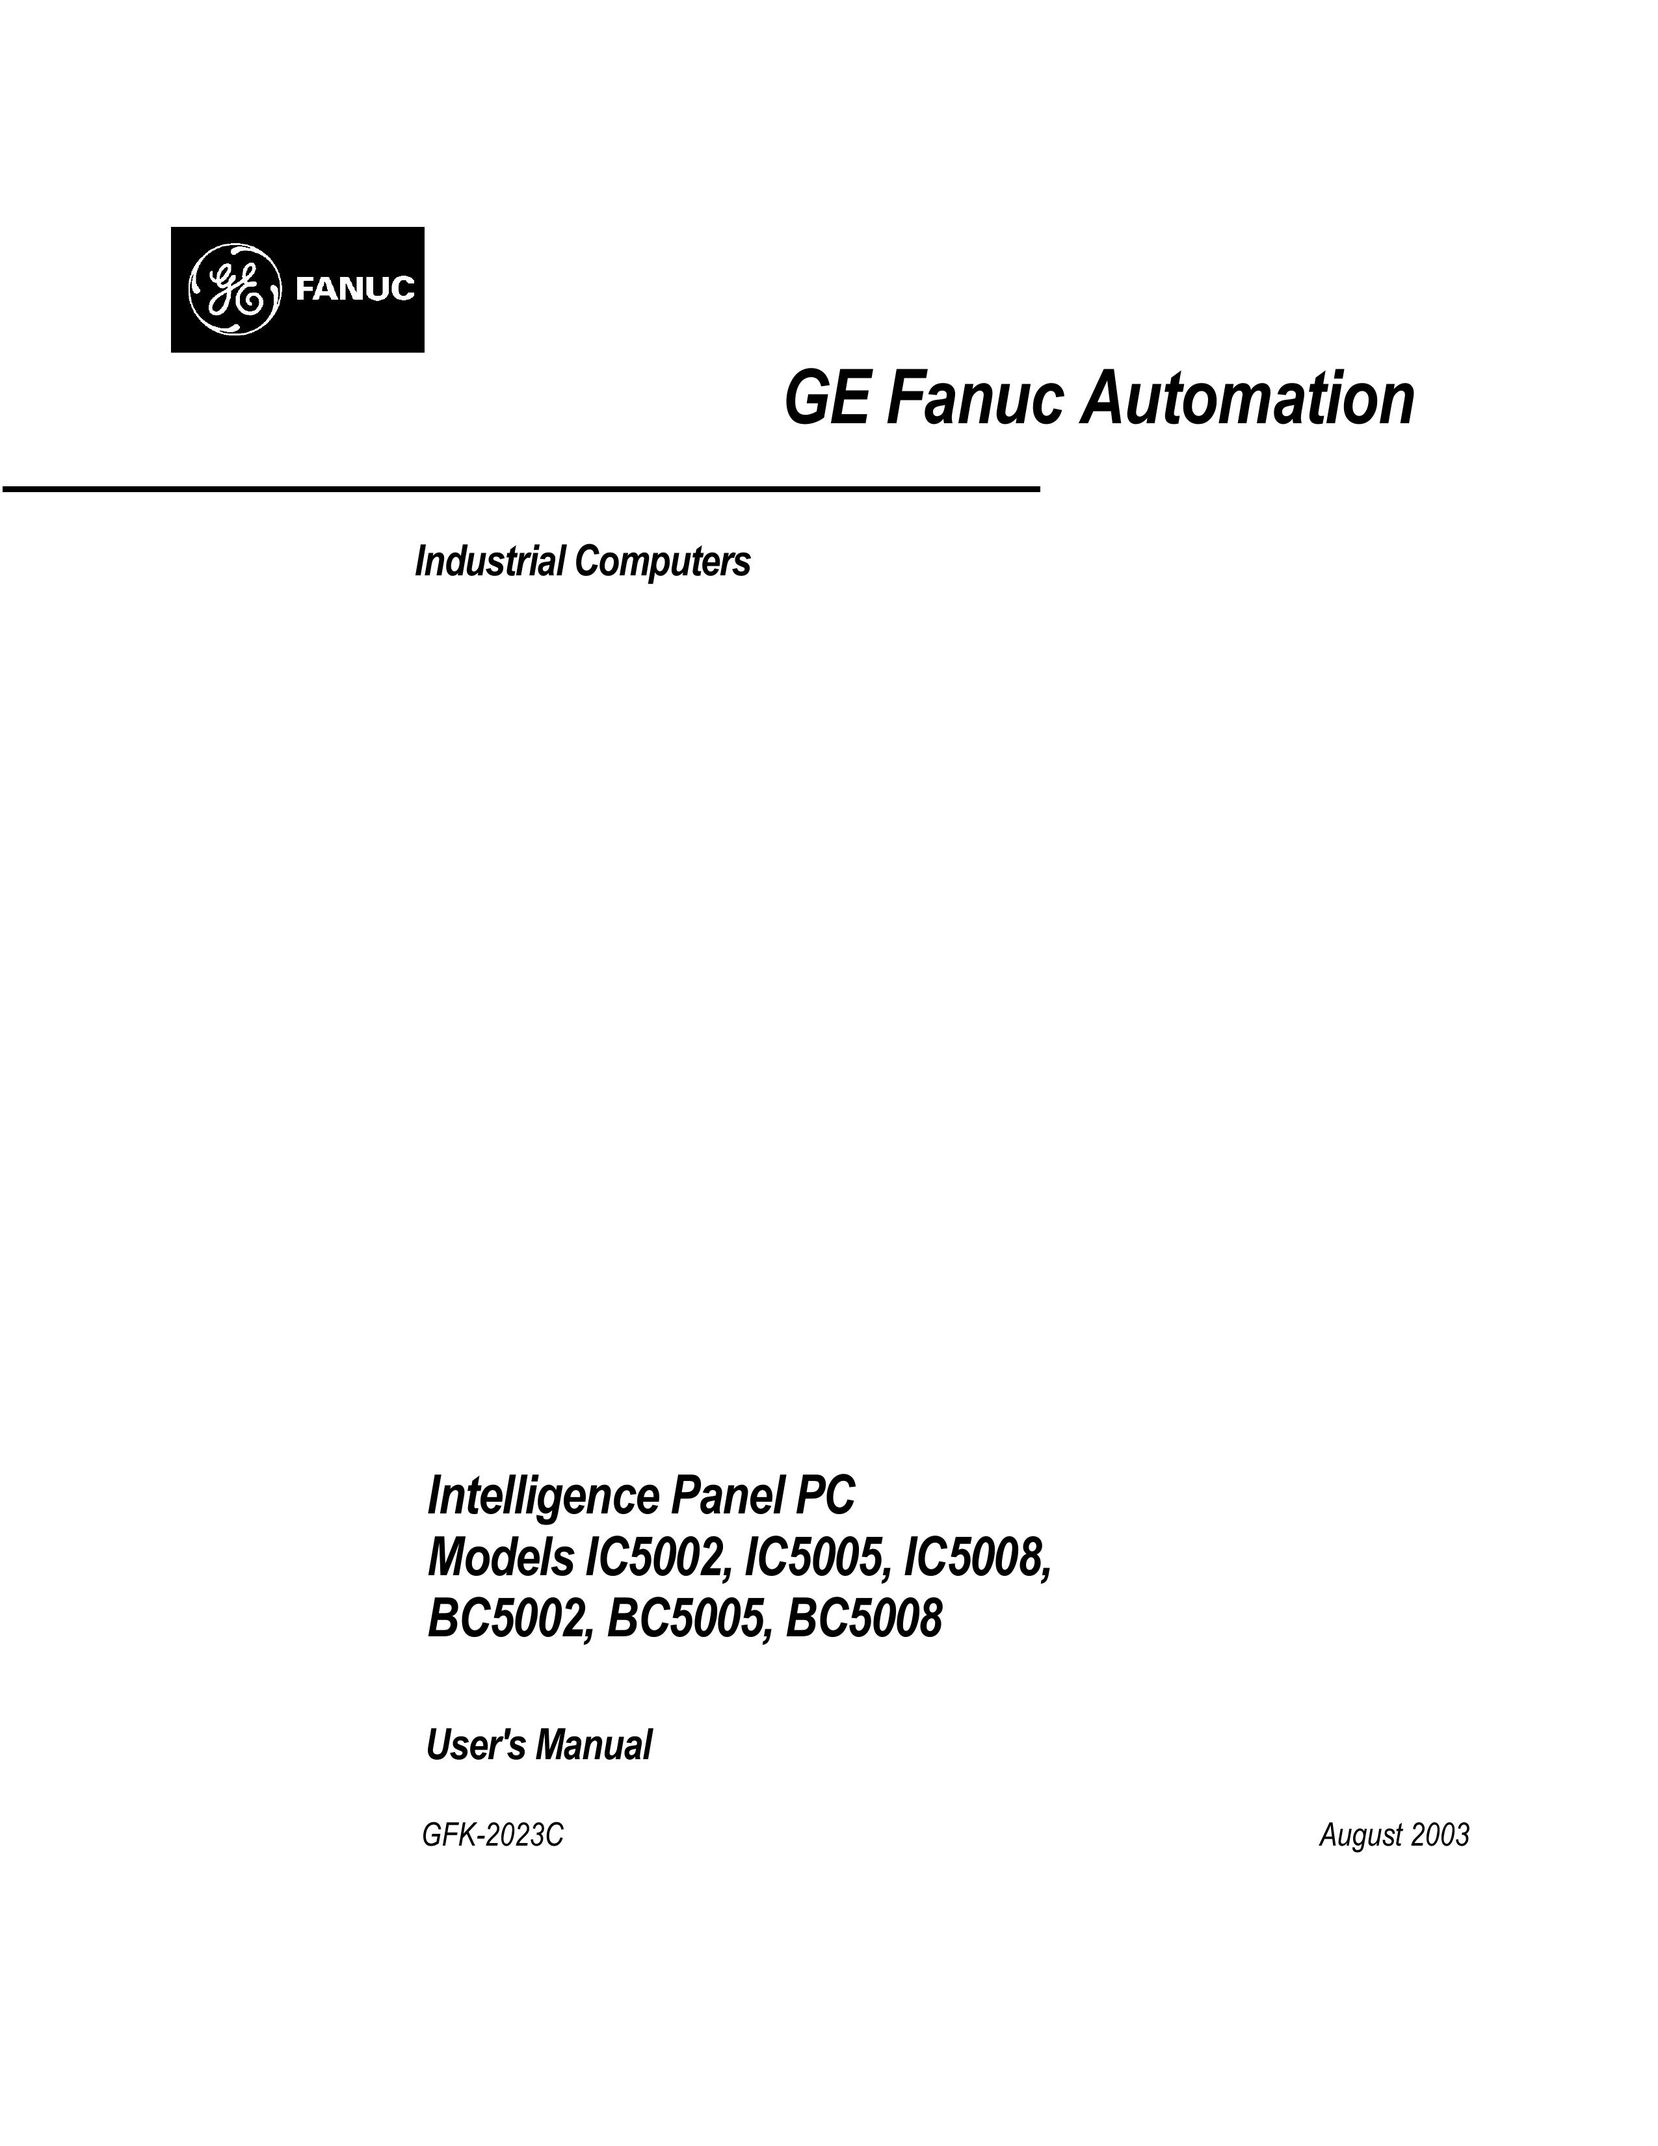 GE BC5002 Personal Computer User Manual